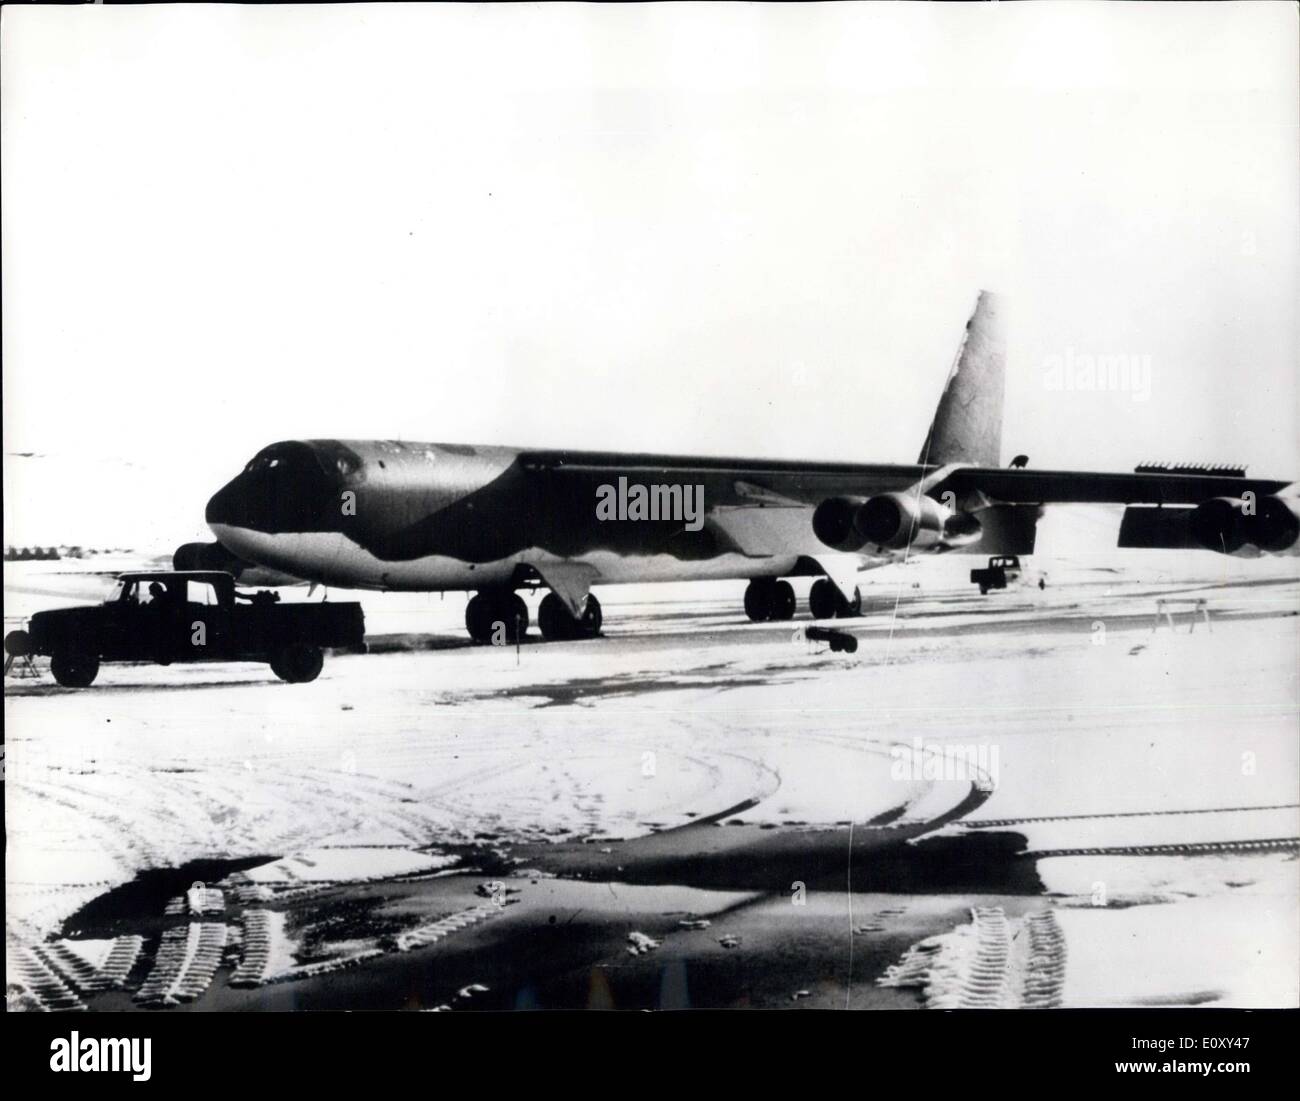 Le 23 janvier 1968 - Recherche pour H-bombes après Bombardier américain s'écrase dans le Groenland : Une recherche est menée par les équipes de l'Armée de l'air américaine pour quatre bombes à hydrogène à bord d'un bombardier américain qui s'est écrasé en mer couvertes de glace lorsqu'il tente un atterrissage d'urgence. L'avion, un bombardier B-52, s'est écrasé hier dans le nord du Groenland Star Bay - 11 kilomètres de la base aérienne américaine de Thulé. Une déclaration a dit le bombardier B-52 est l'arme nucléaire n'étaient pas armés et il n'y avait pas de danger d'une explosion nucléaire Banque D'Images